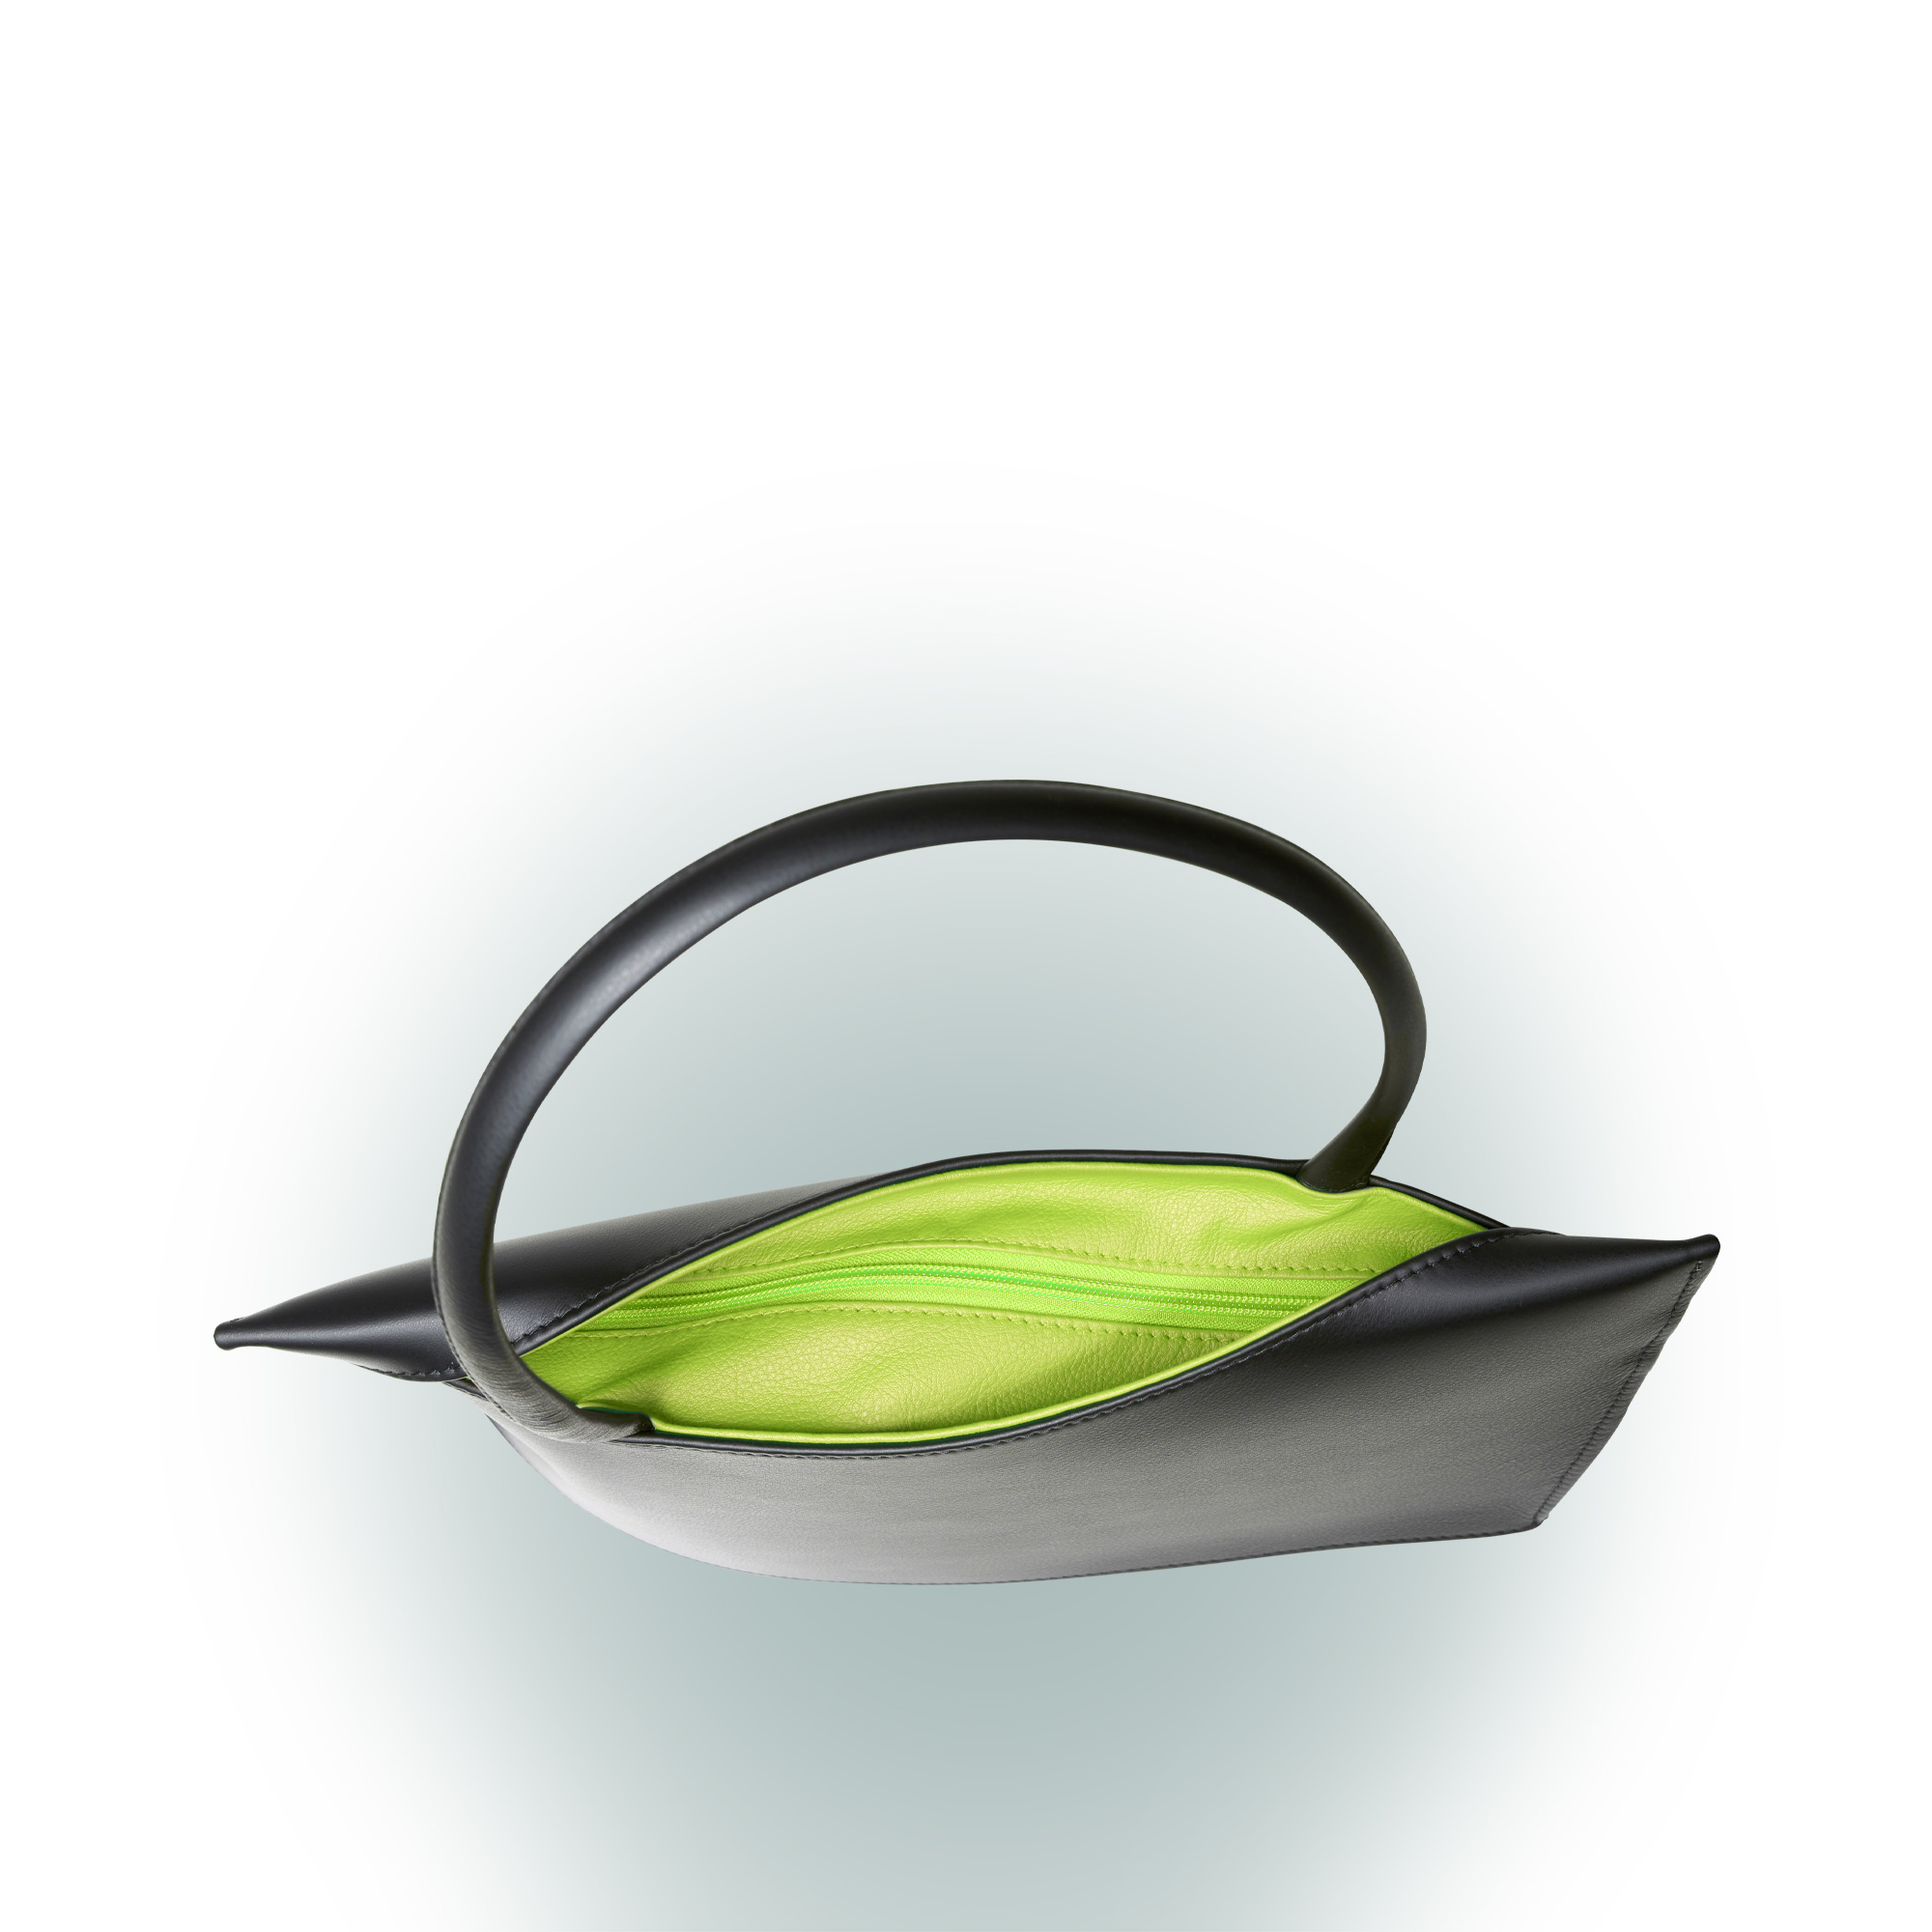 Olbrish Handtasche Wave, Nappaleder Schwarz-Apfelgrün, Größe M, Detailansicht Reißverschluss